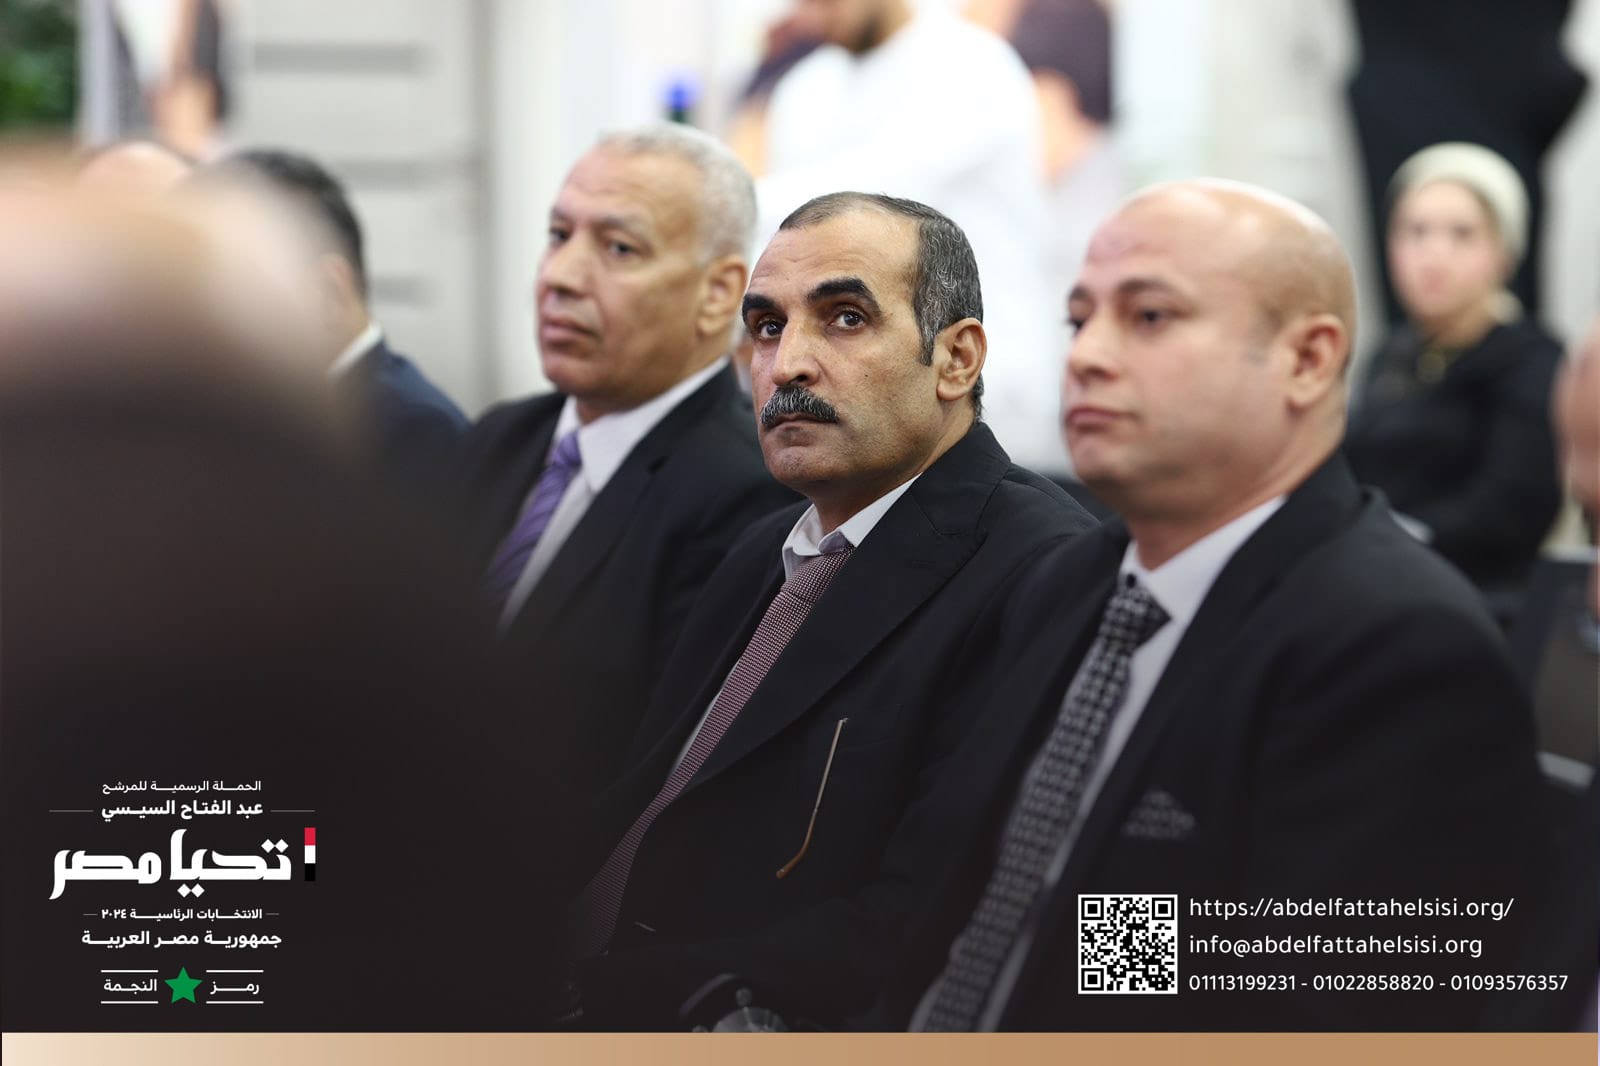 الحملة الرسمية للمرشح الرئاسى عبد الفتاح السيسي تستقبل وفداً من النقابة العامة لأعمال النقل الجوي   (13)